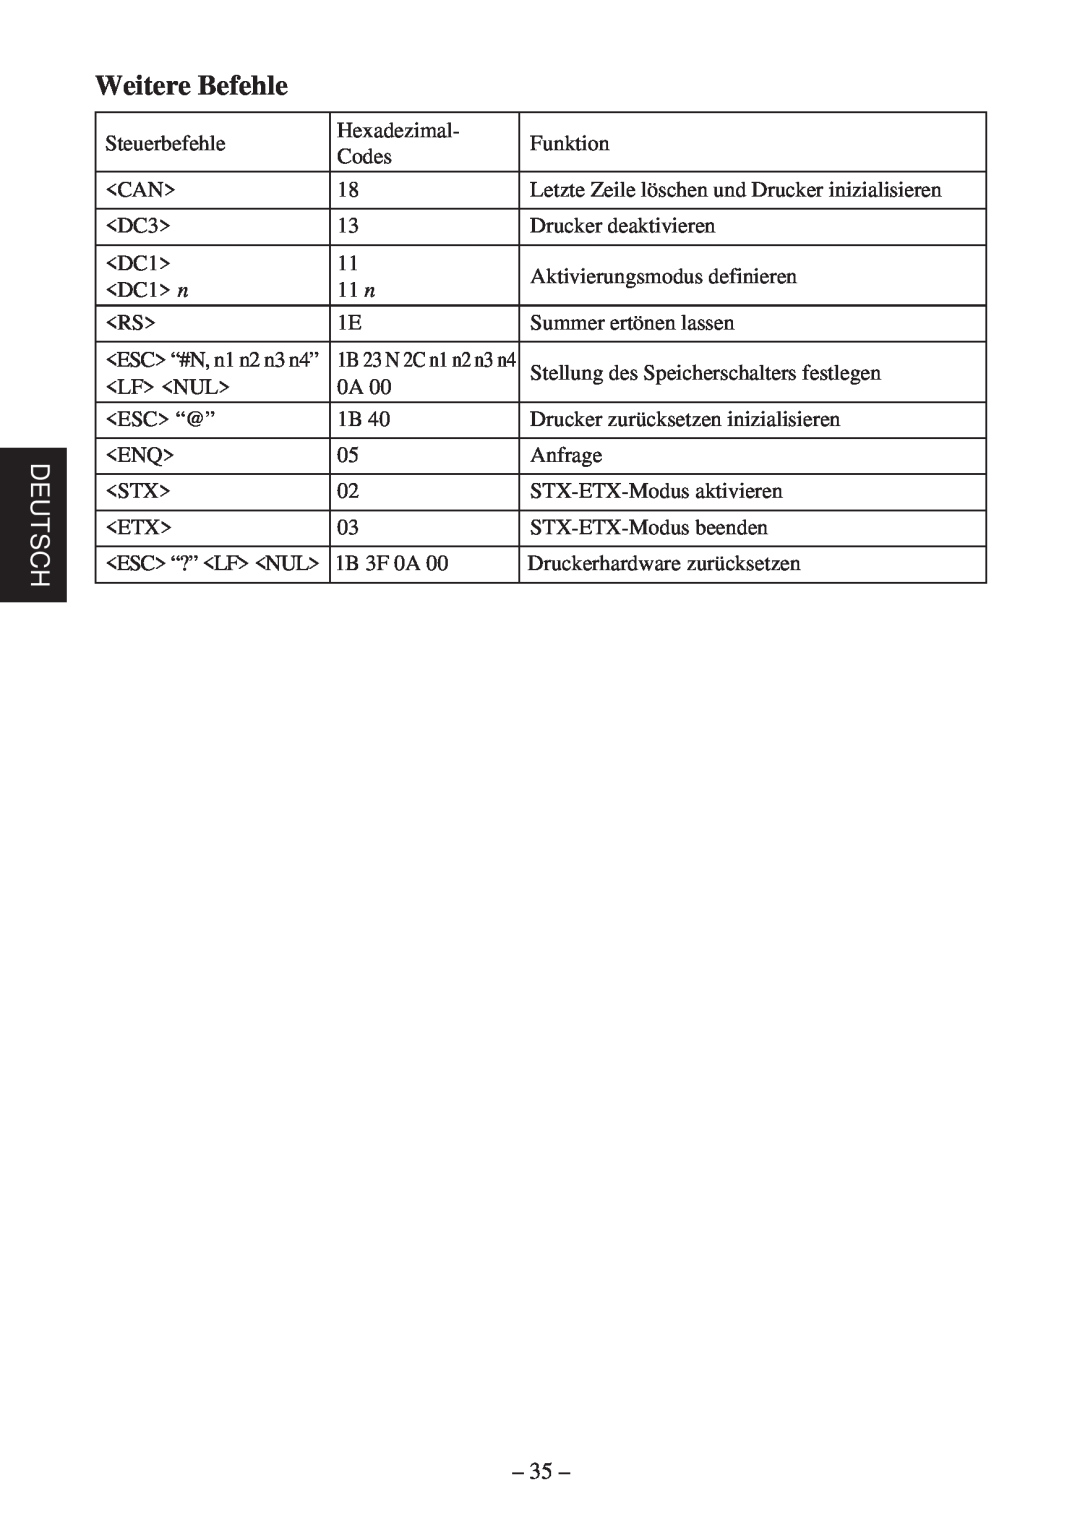 Star Micronics TSP400 Series user manual Weitere Befehle, Deutsch 